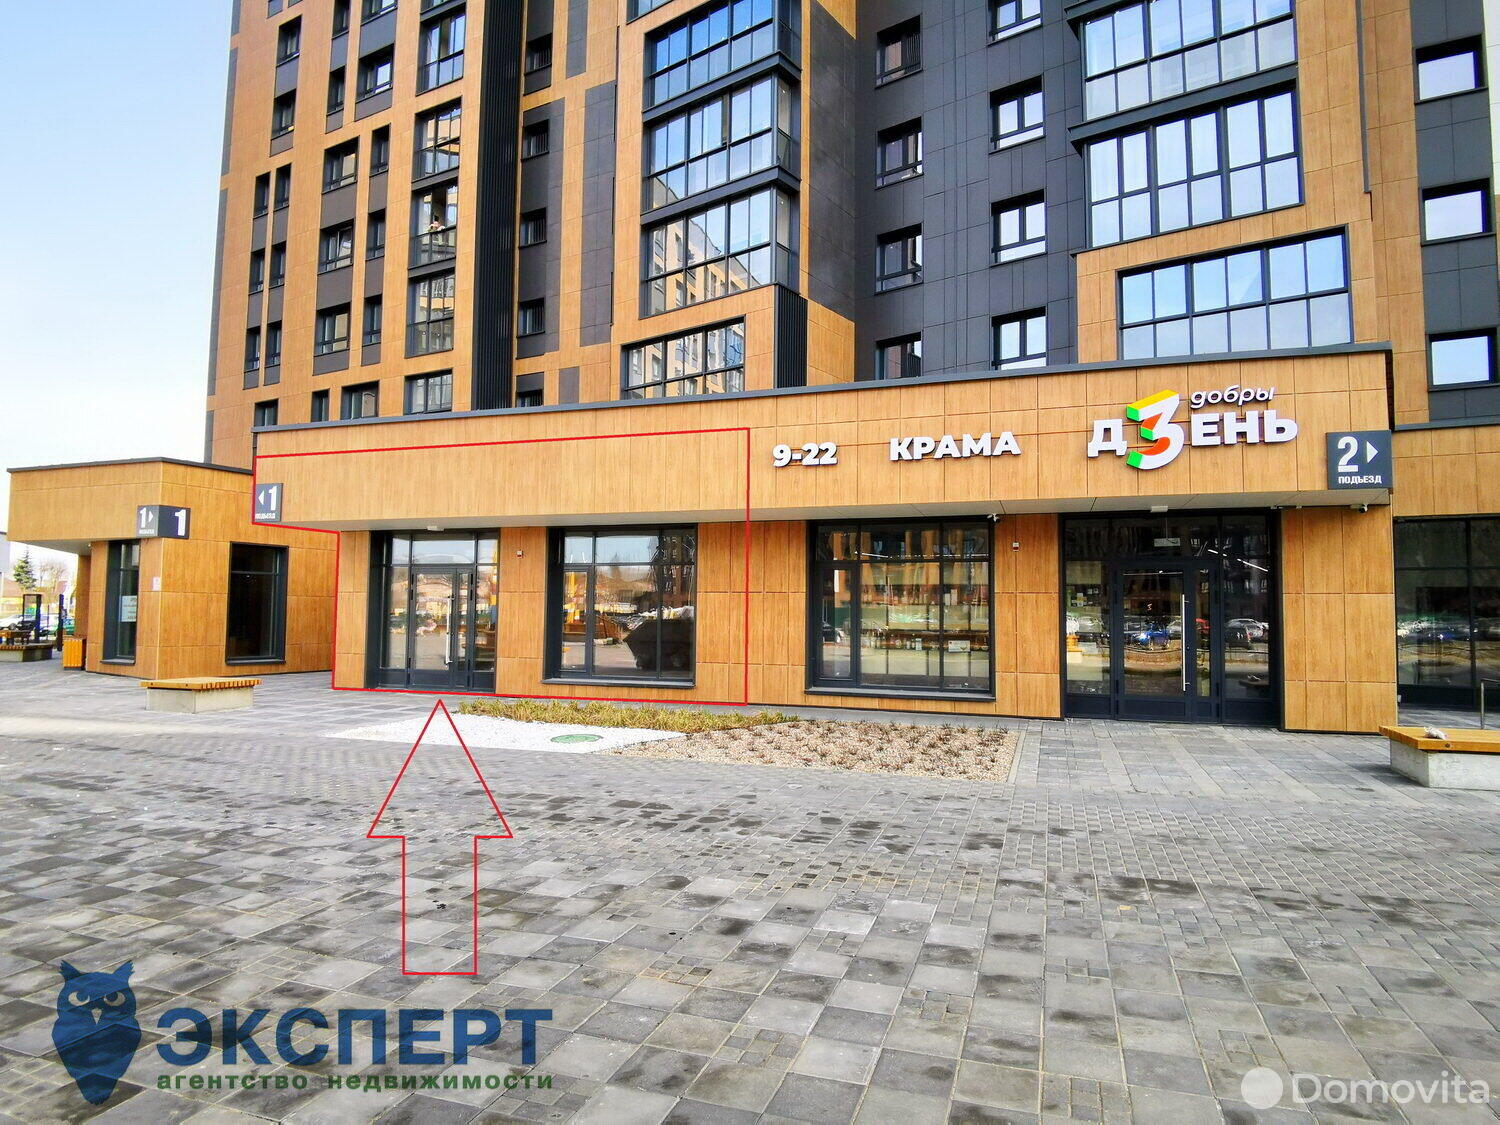 Аренда торговой точки на ул. Нововиленская, д. 47 в Минске, 1619EUR, код 964898 - фото 2